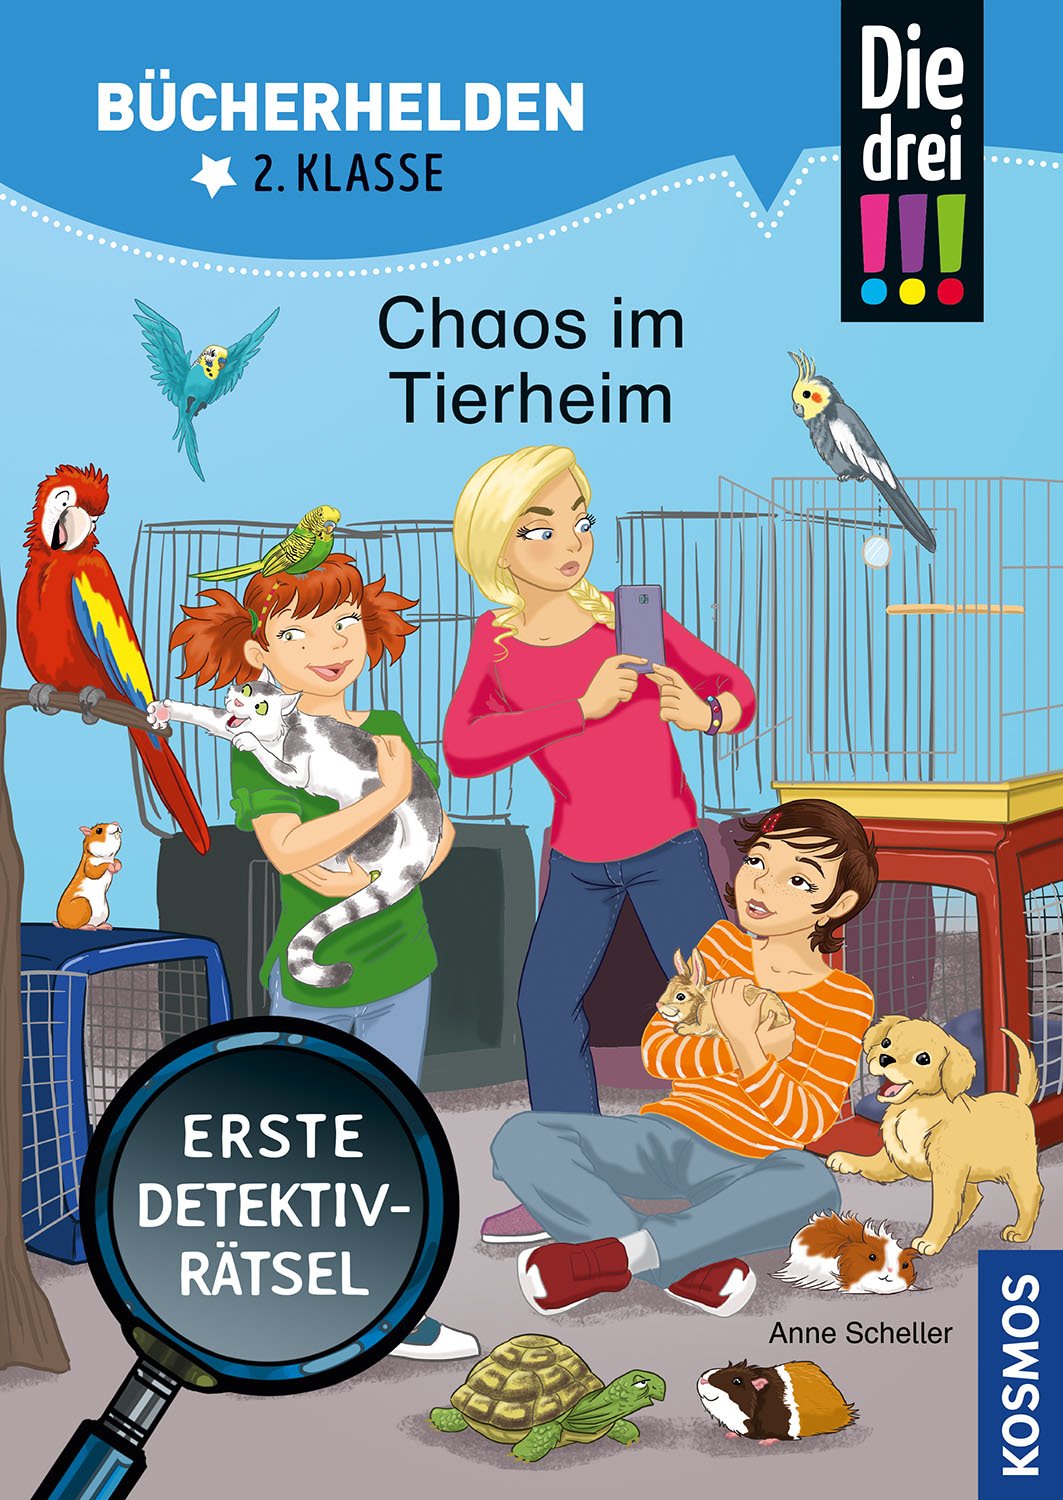 Die drei !!!  Bücherhelden 2. Klasse  Chaos im Tierheim